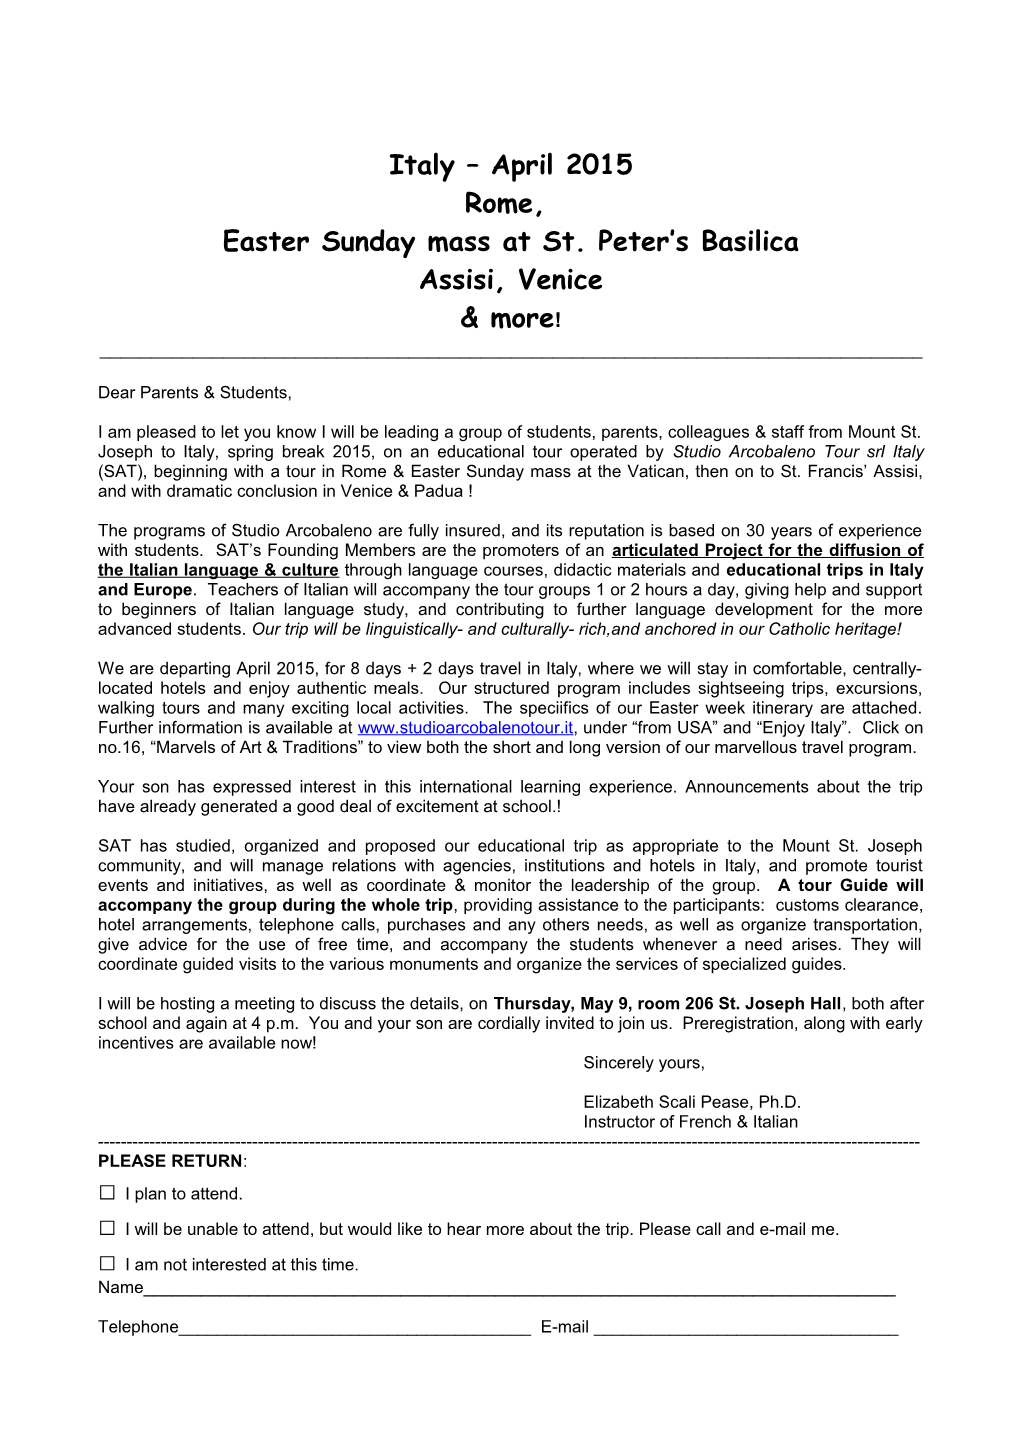 Easter Sunday Mass Atst. Peter S Basilica